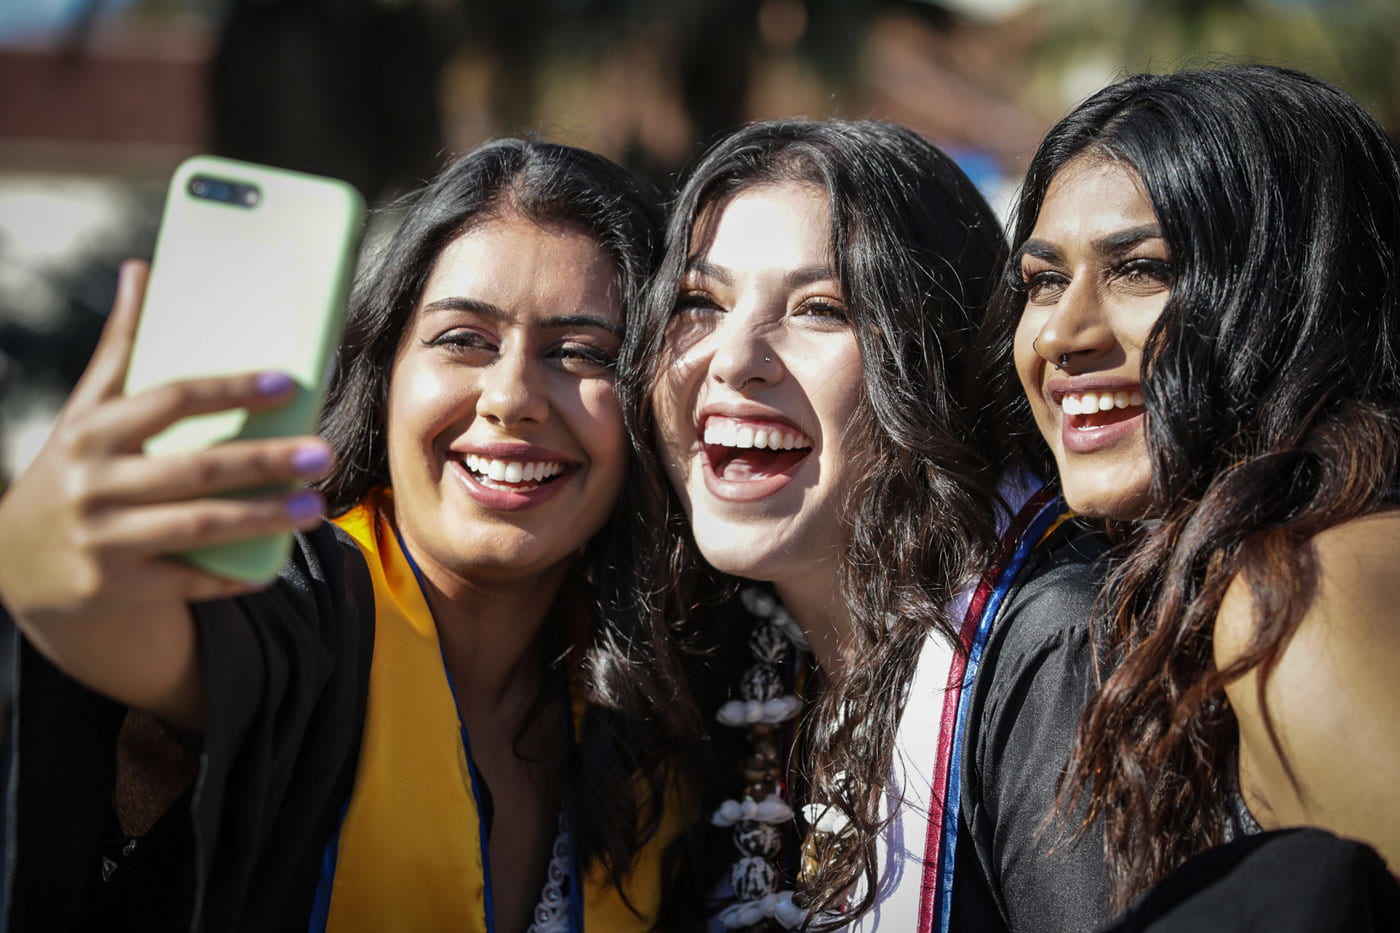 SJSU graduates smile while taking a selfie.